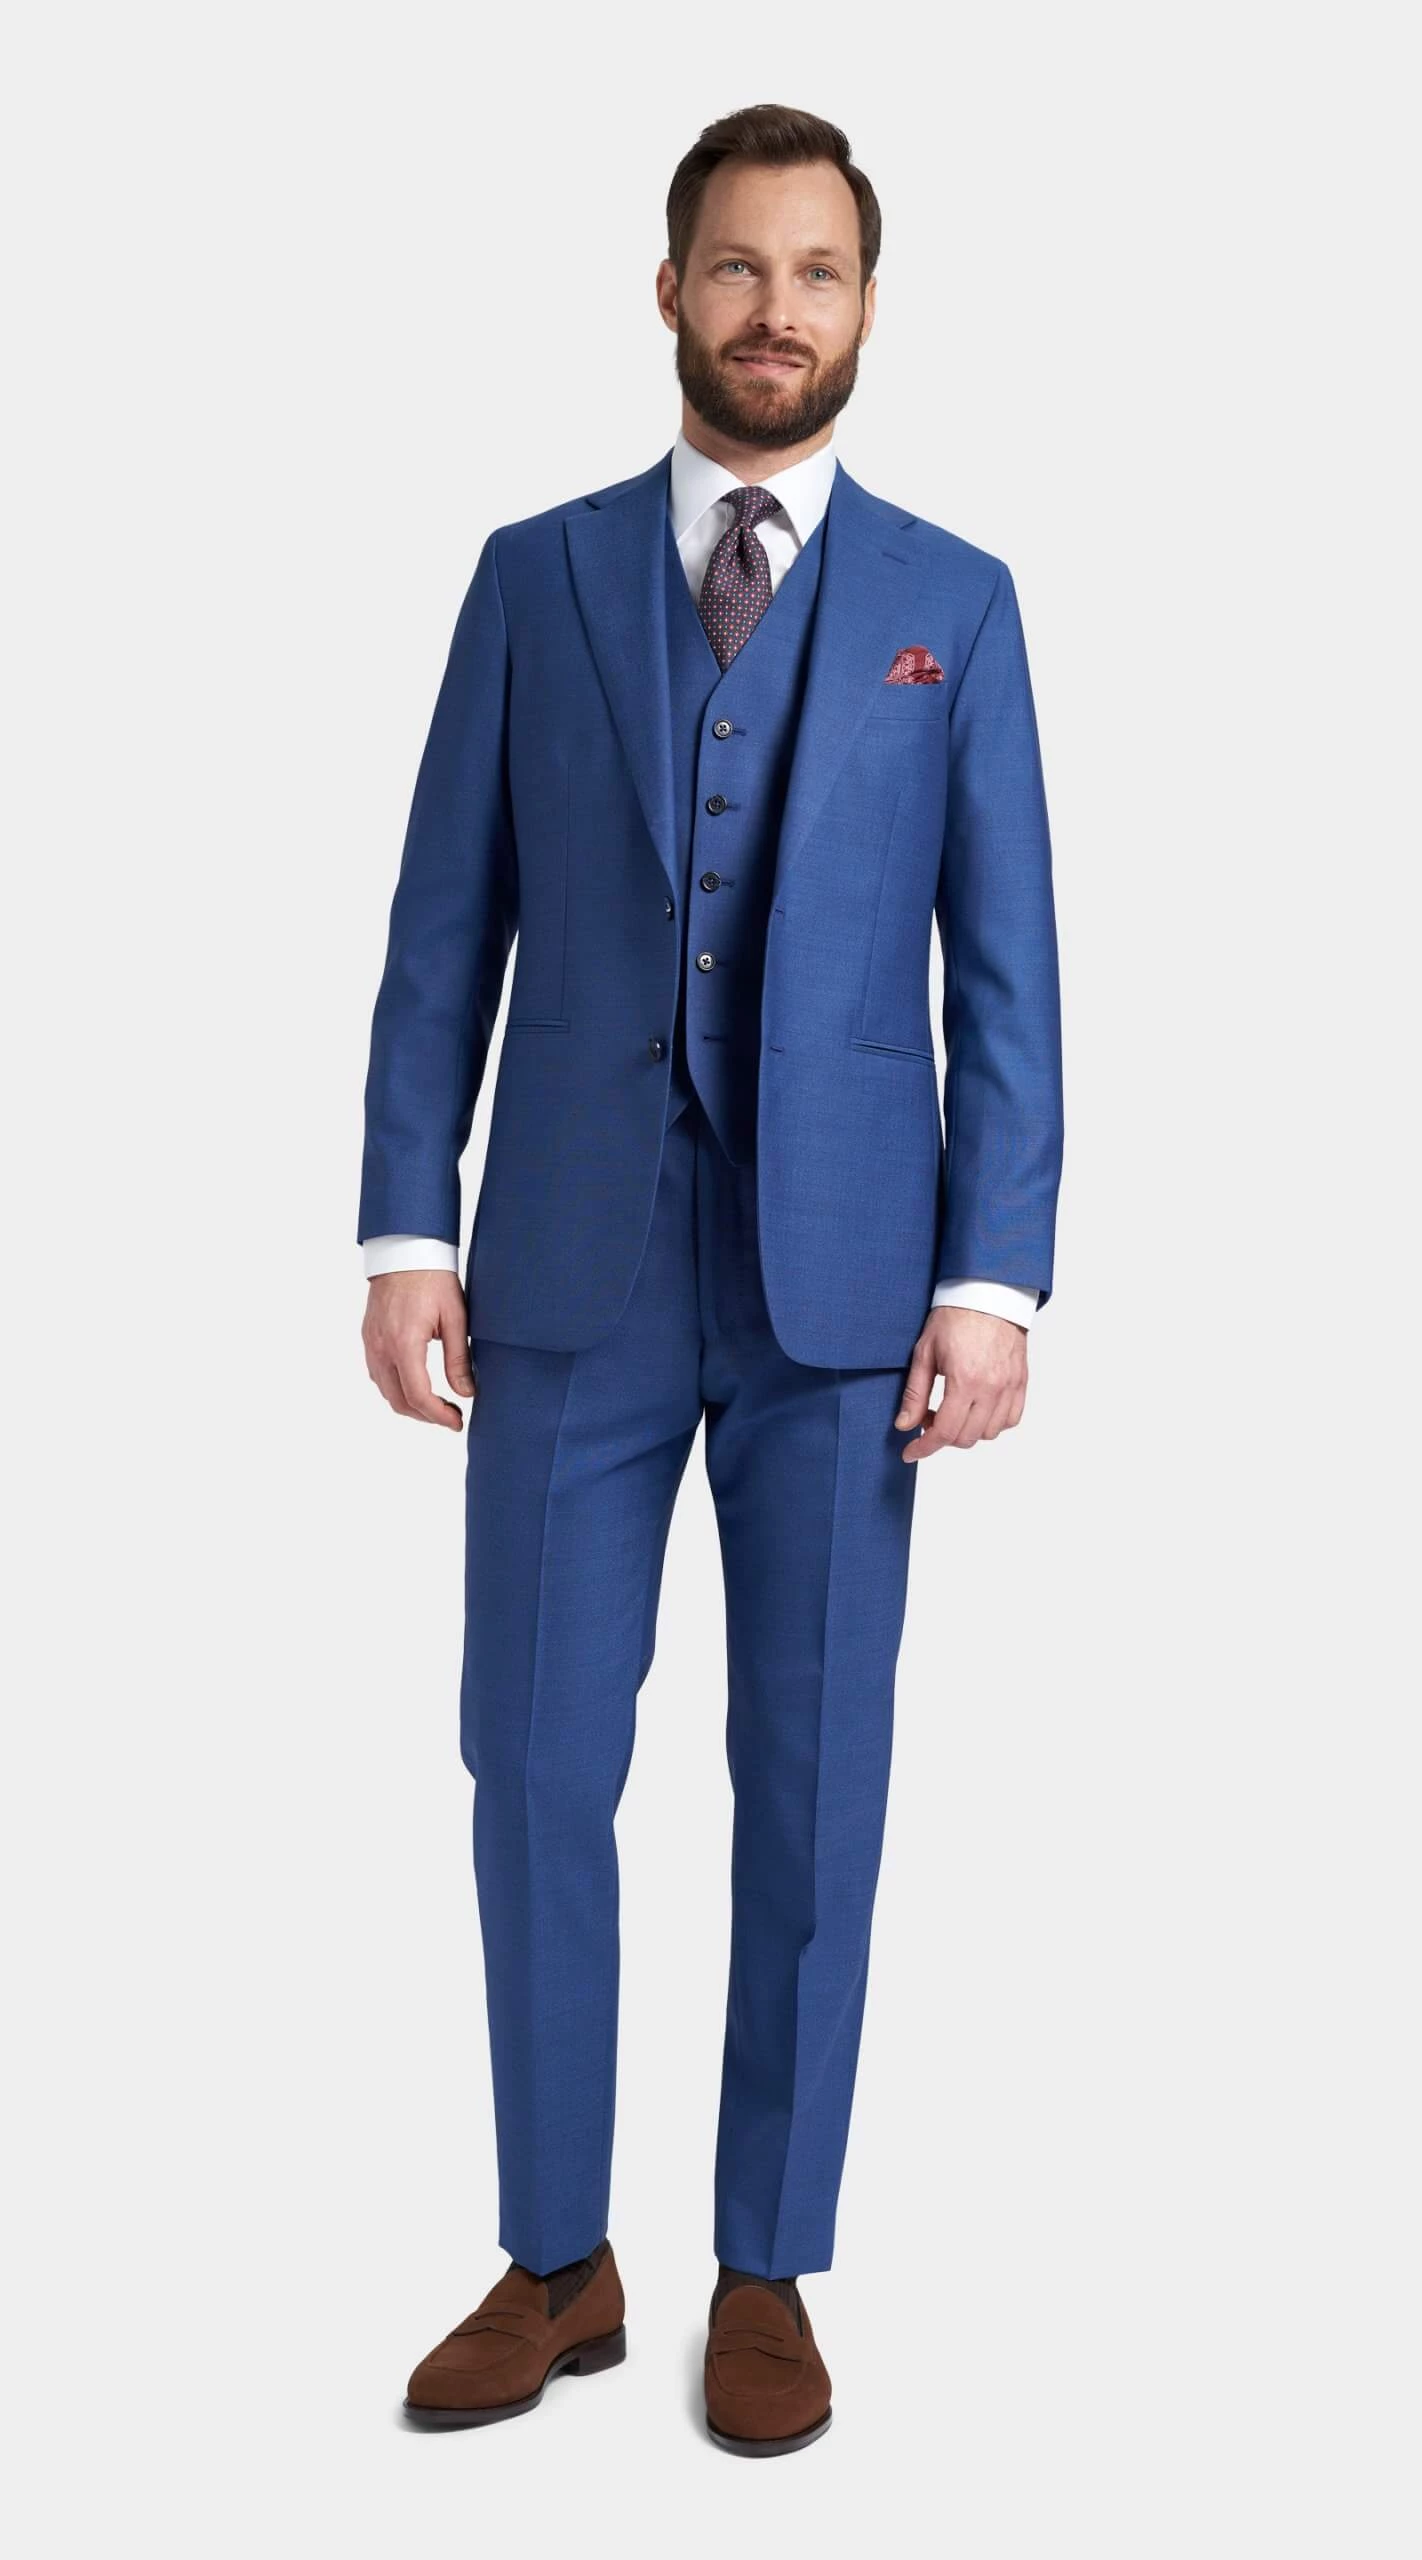 Blue suit in a hard spun weave / Blåt Tropical jakkesæt / Blauer Anzug in einer Tropical-Webart / Blå dress i Tropical-vev